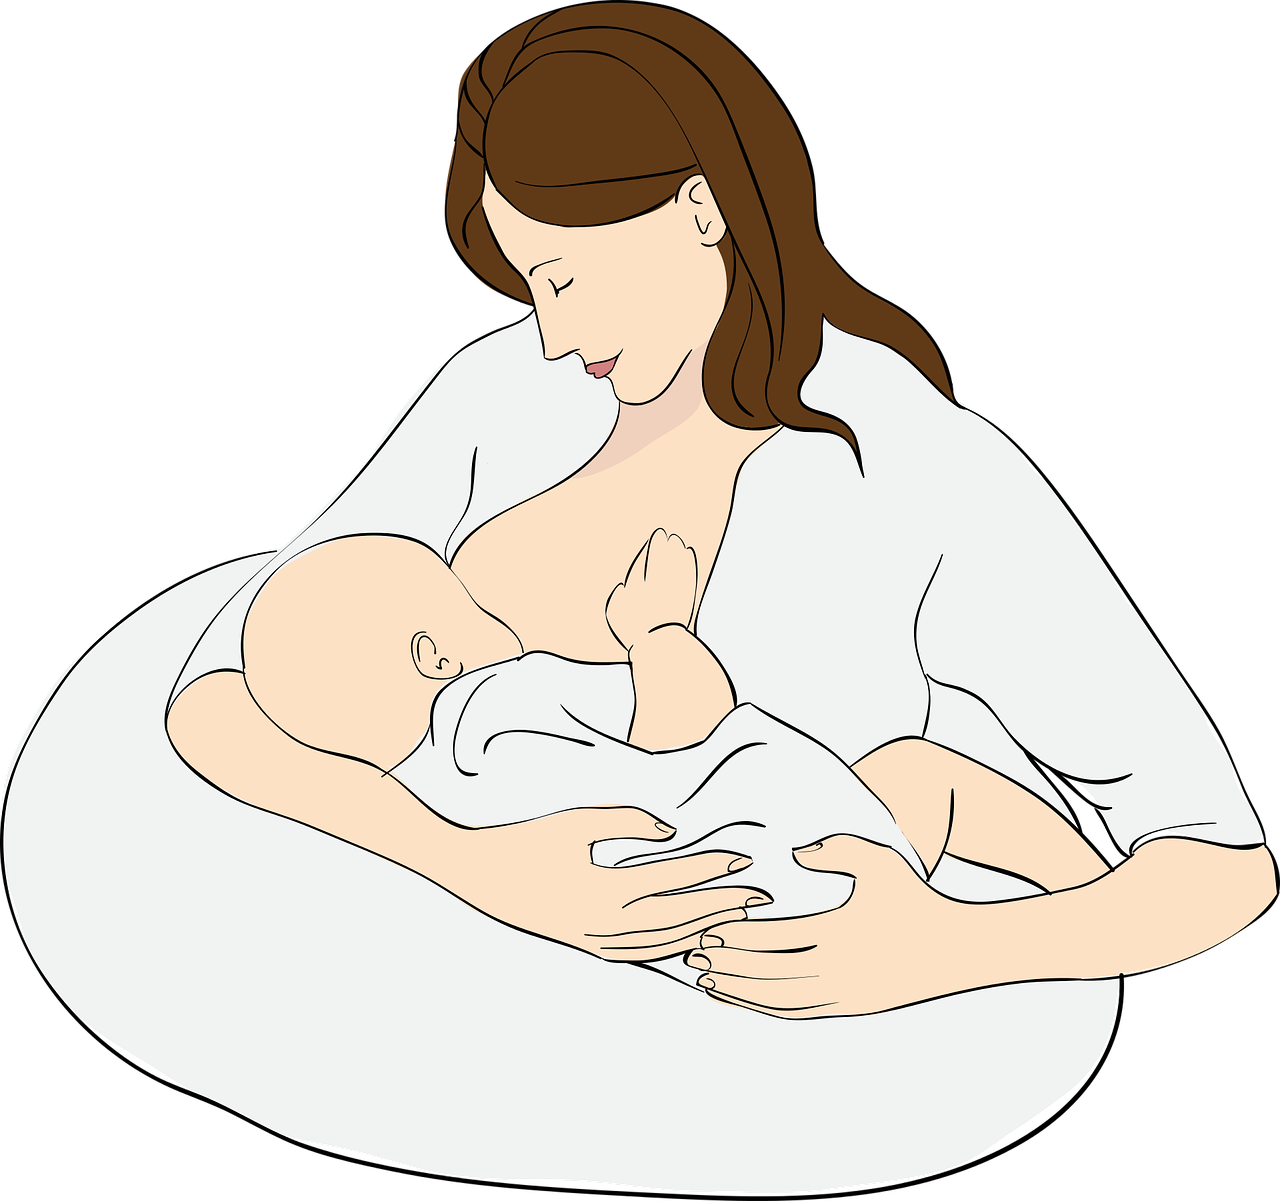 法国国立助产<font color="red">士</font>学院围产期干预指南：启动和支持母乳喂养